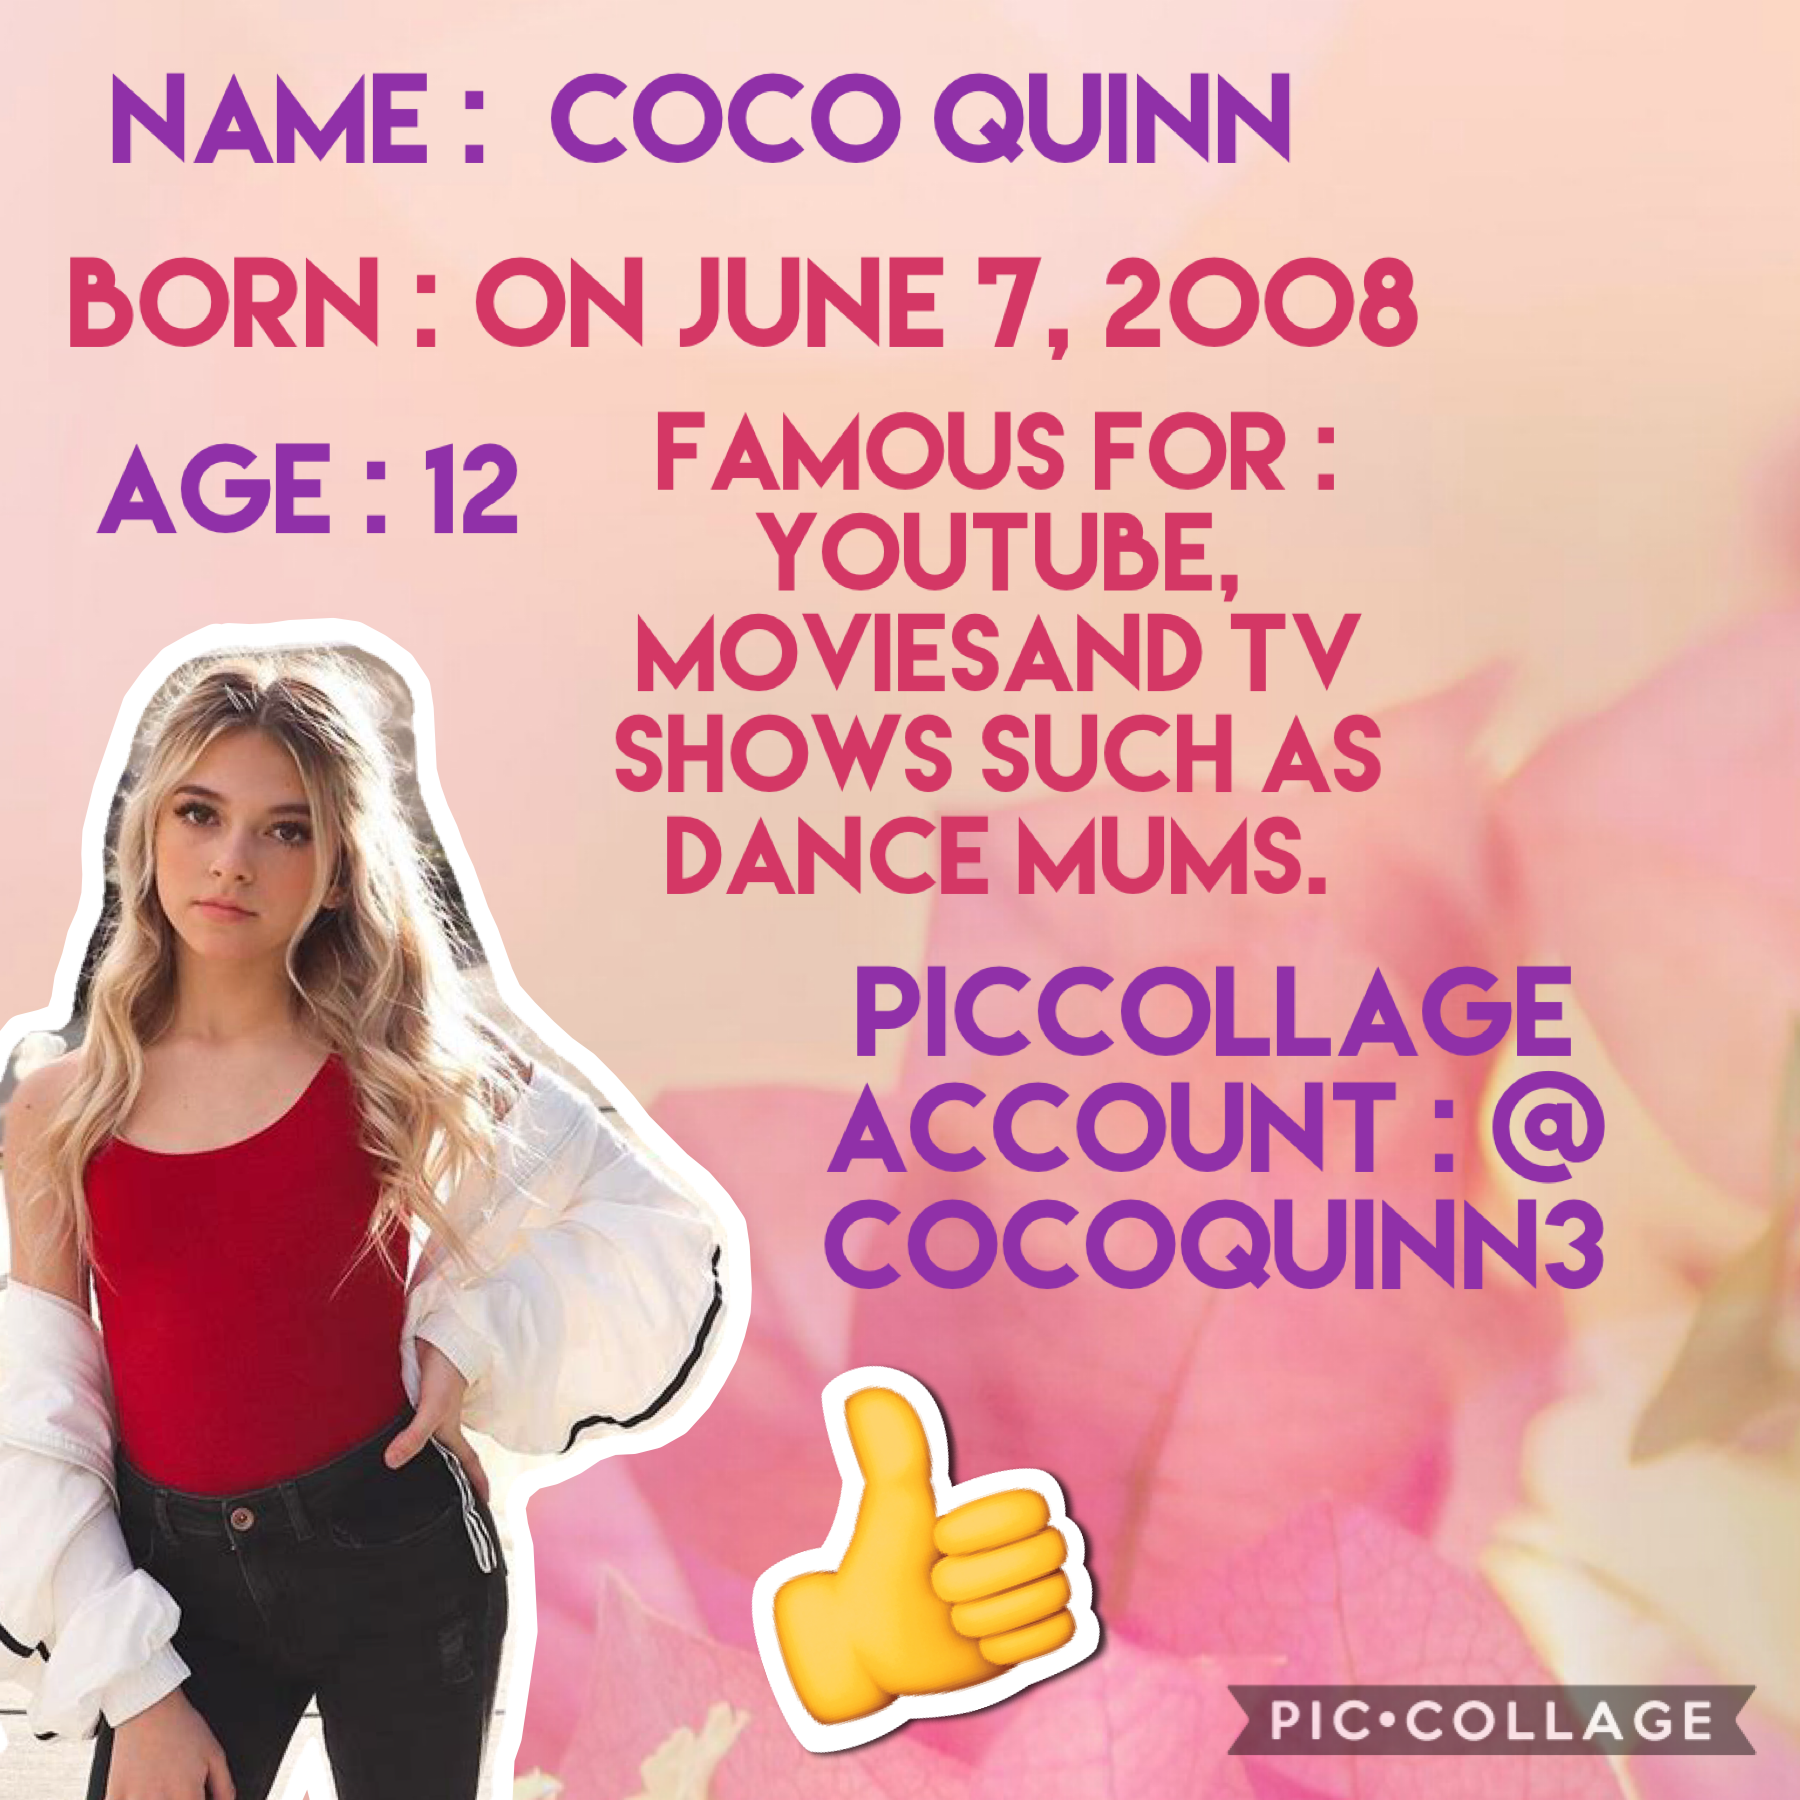 Coco Quinn